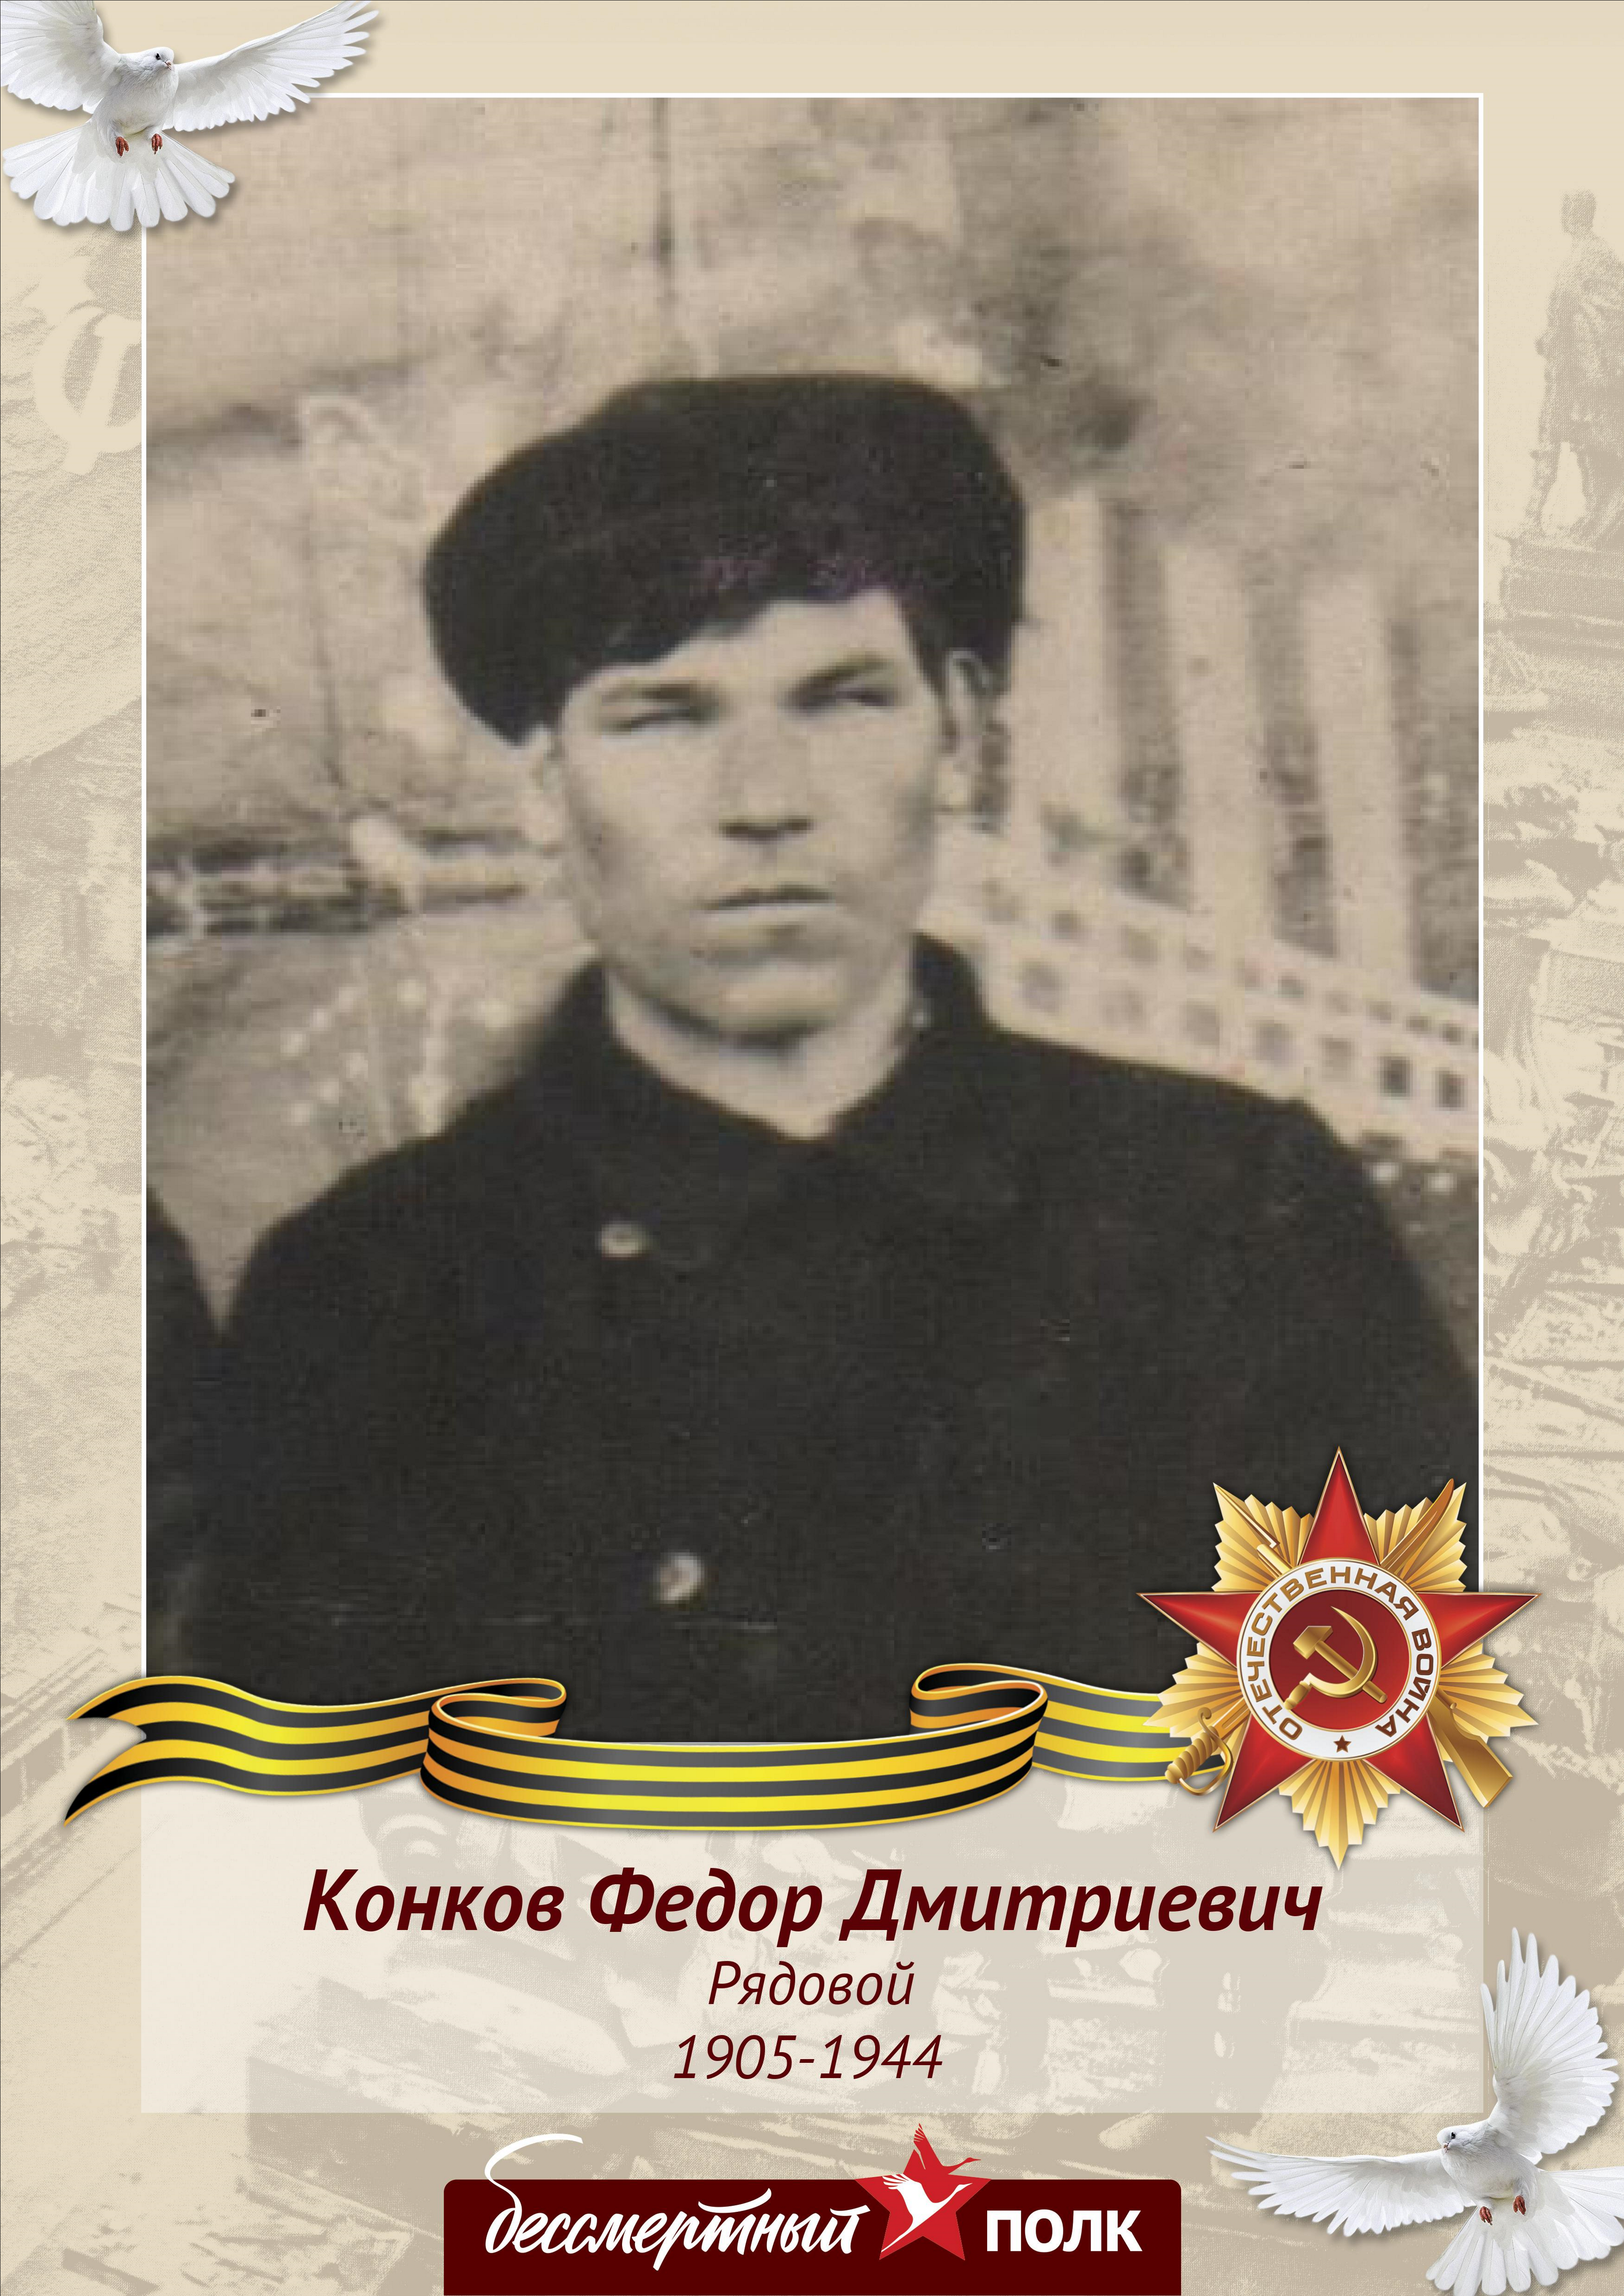 Конков Федор Дмитриевич — Герой Великой Отечественной Войны : safin63 — #ПолкДома